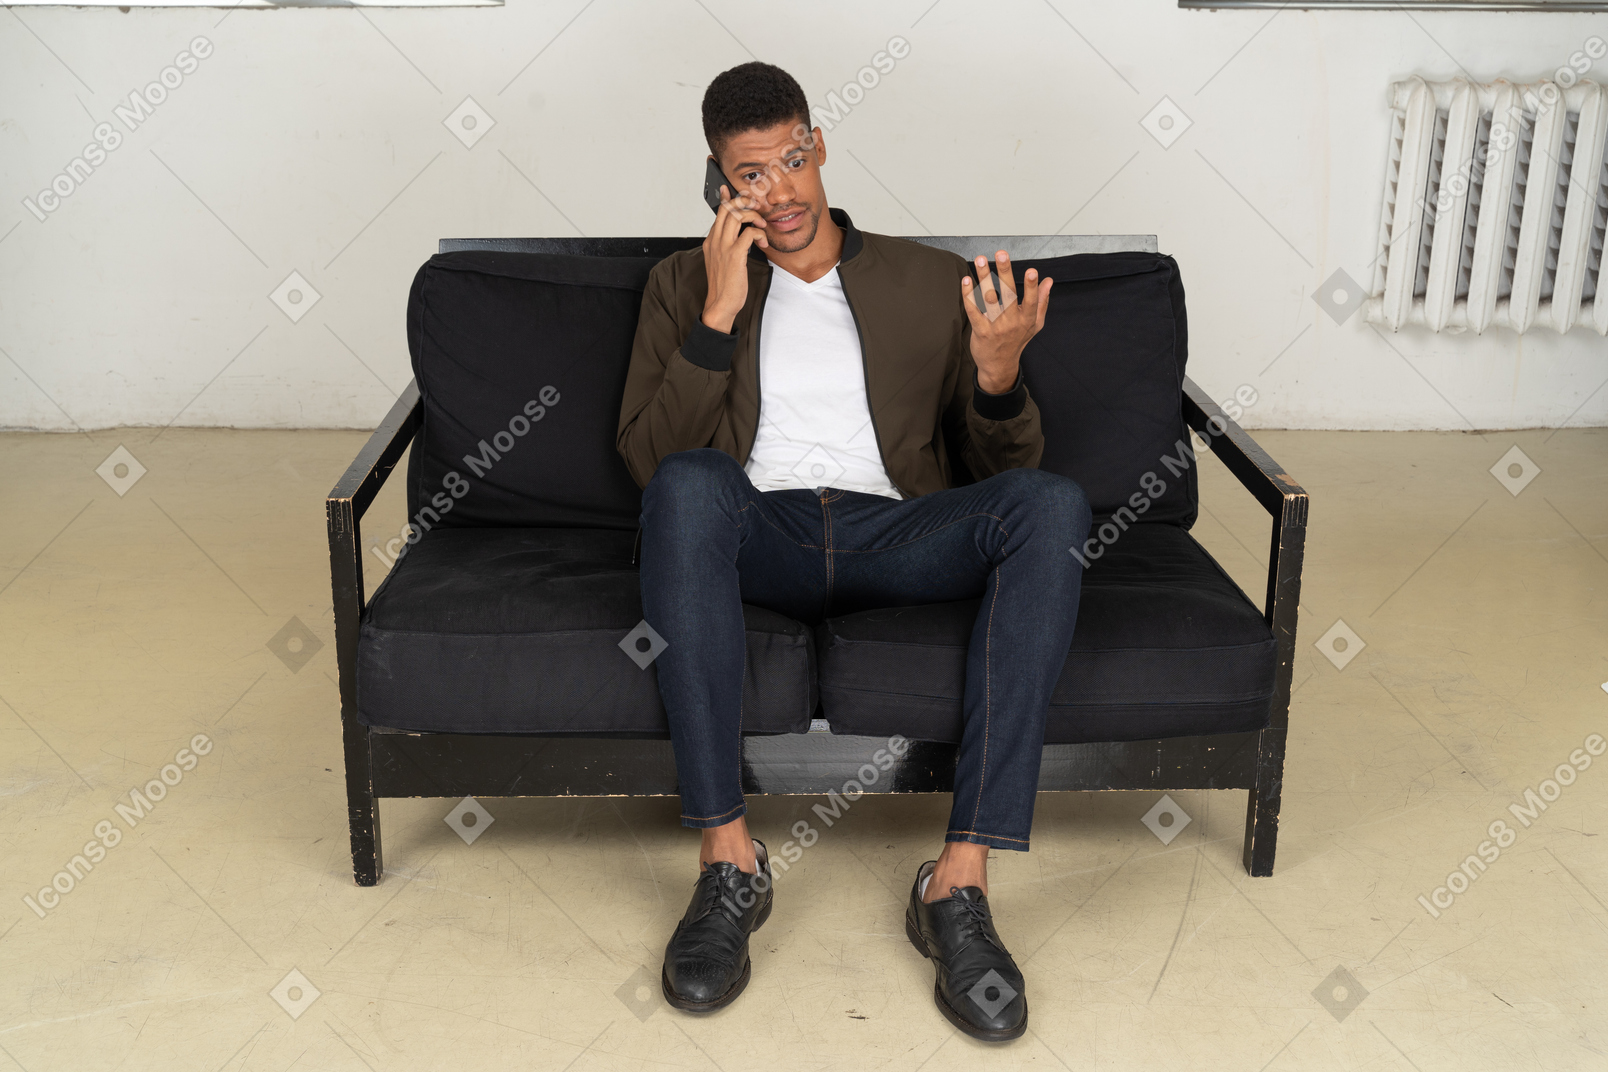 Vista frontal de un joven perplejo sentado en un sofá y hablando por su teléfono